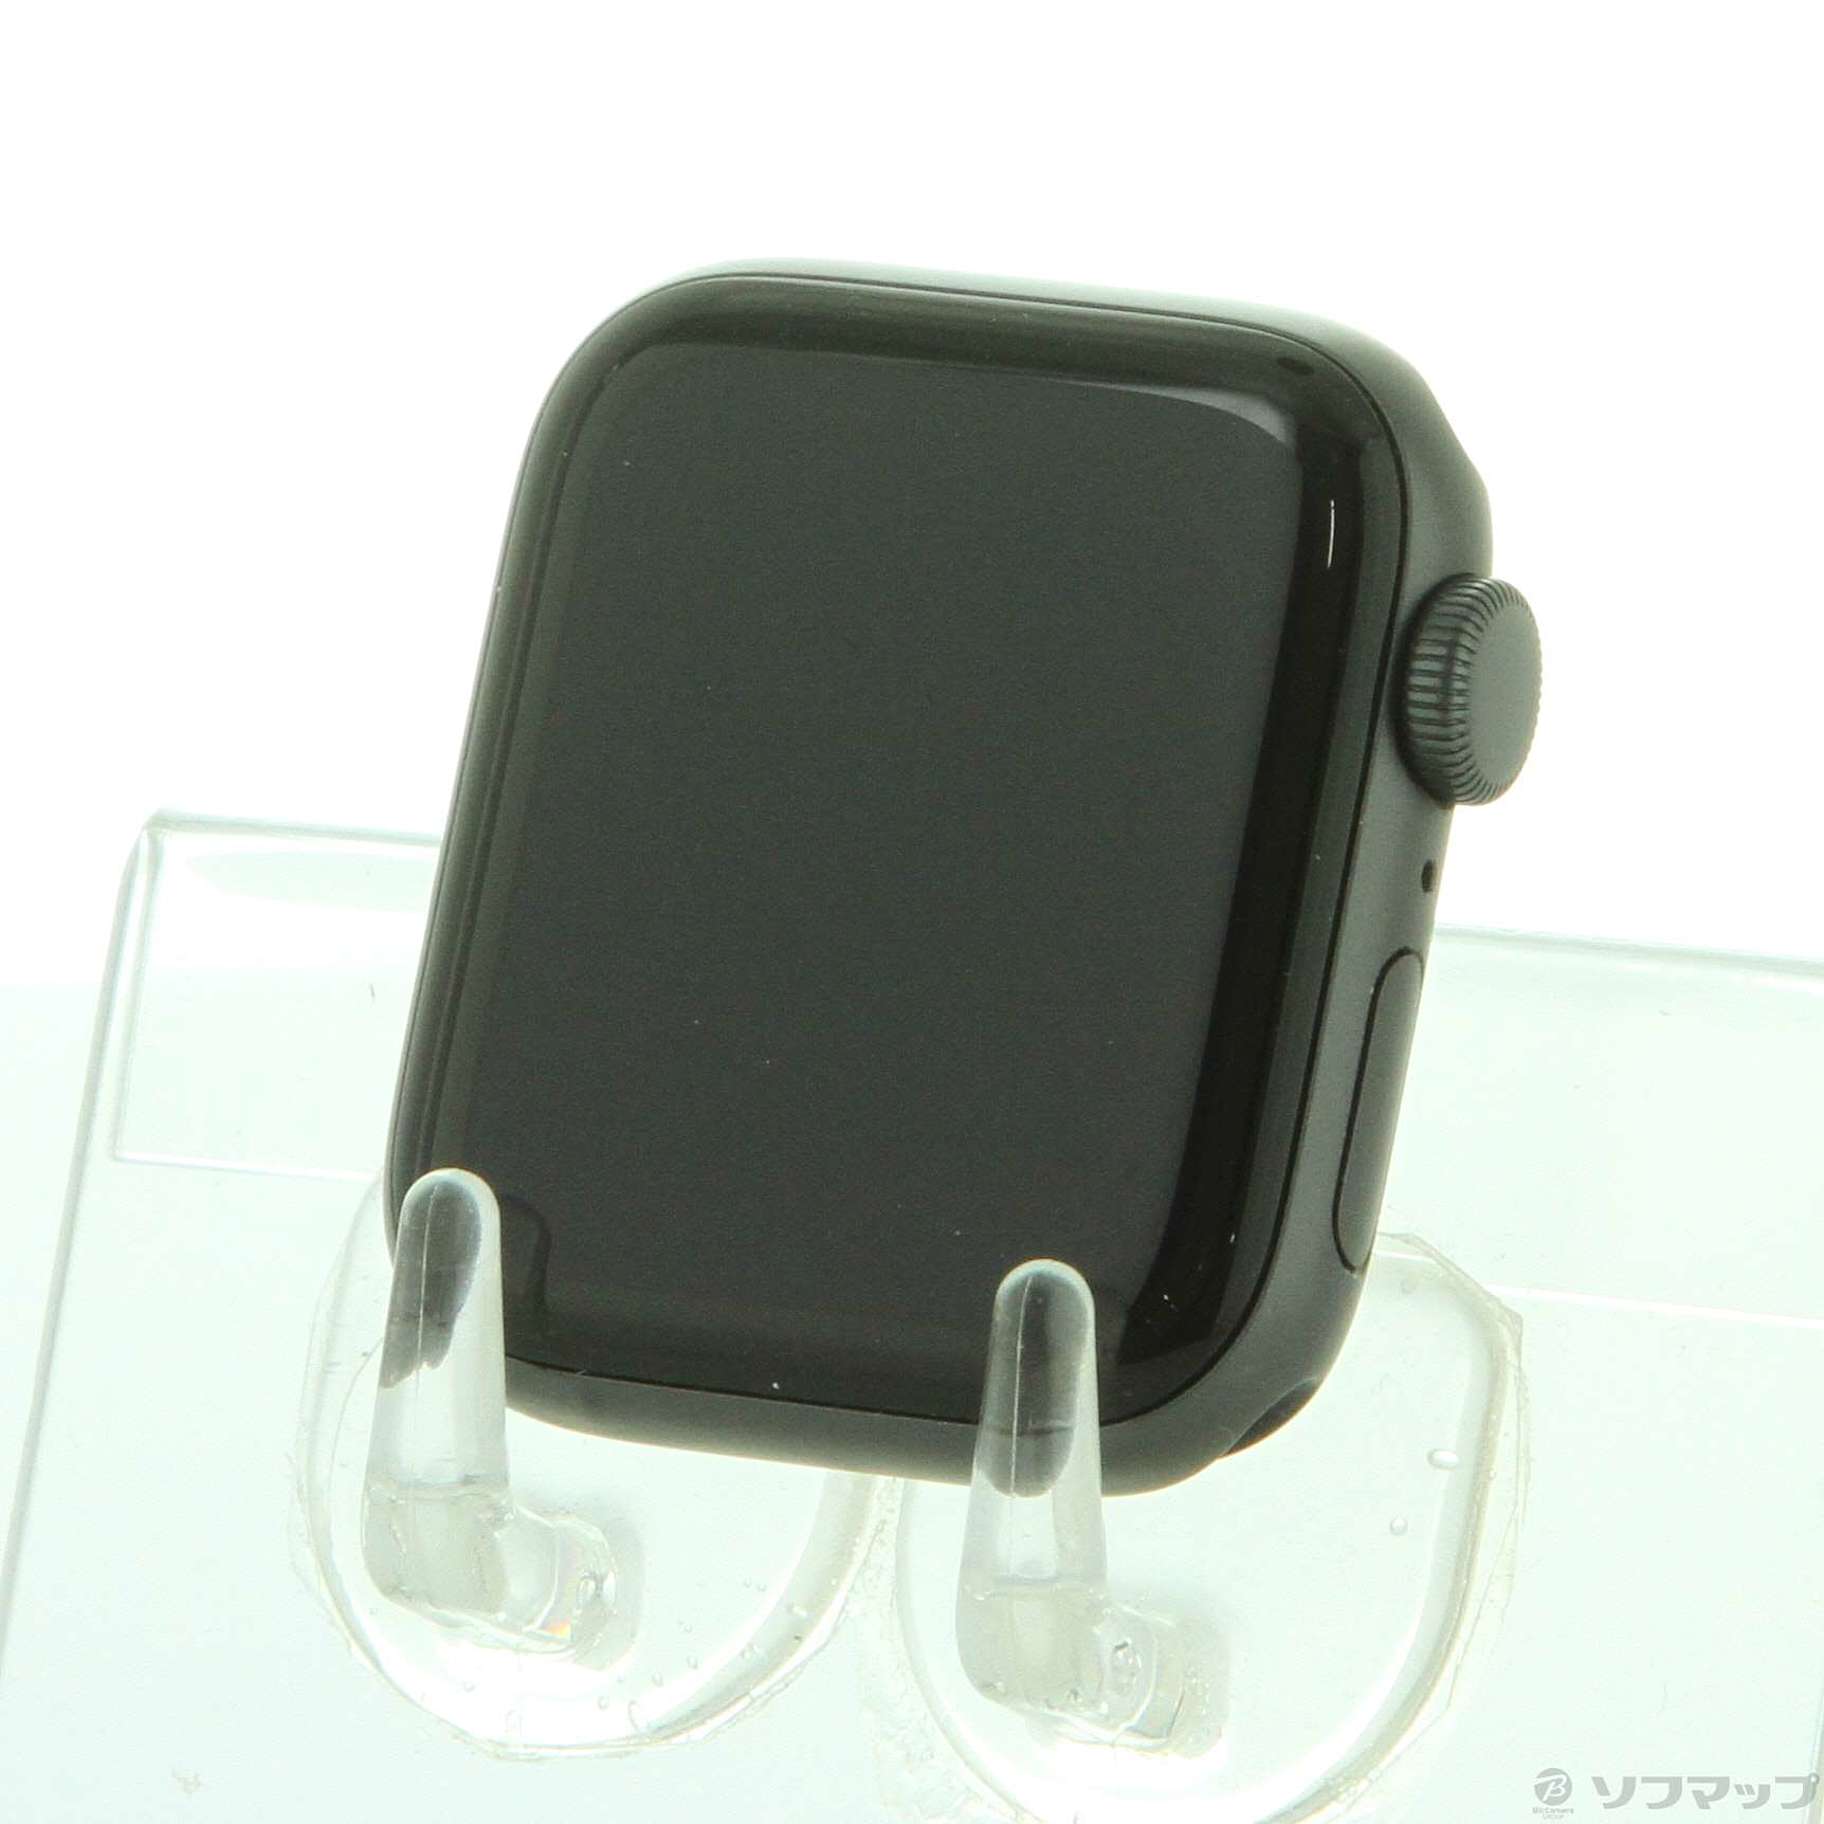 Apple Watch SE 第1世代(GPSモデル) \n40mmスペースグレイ